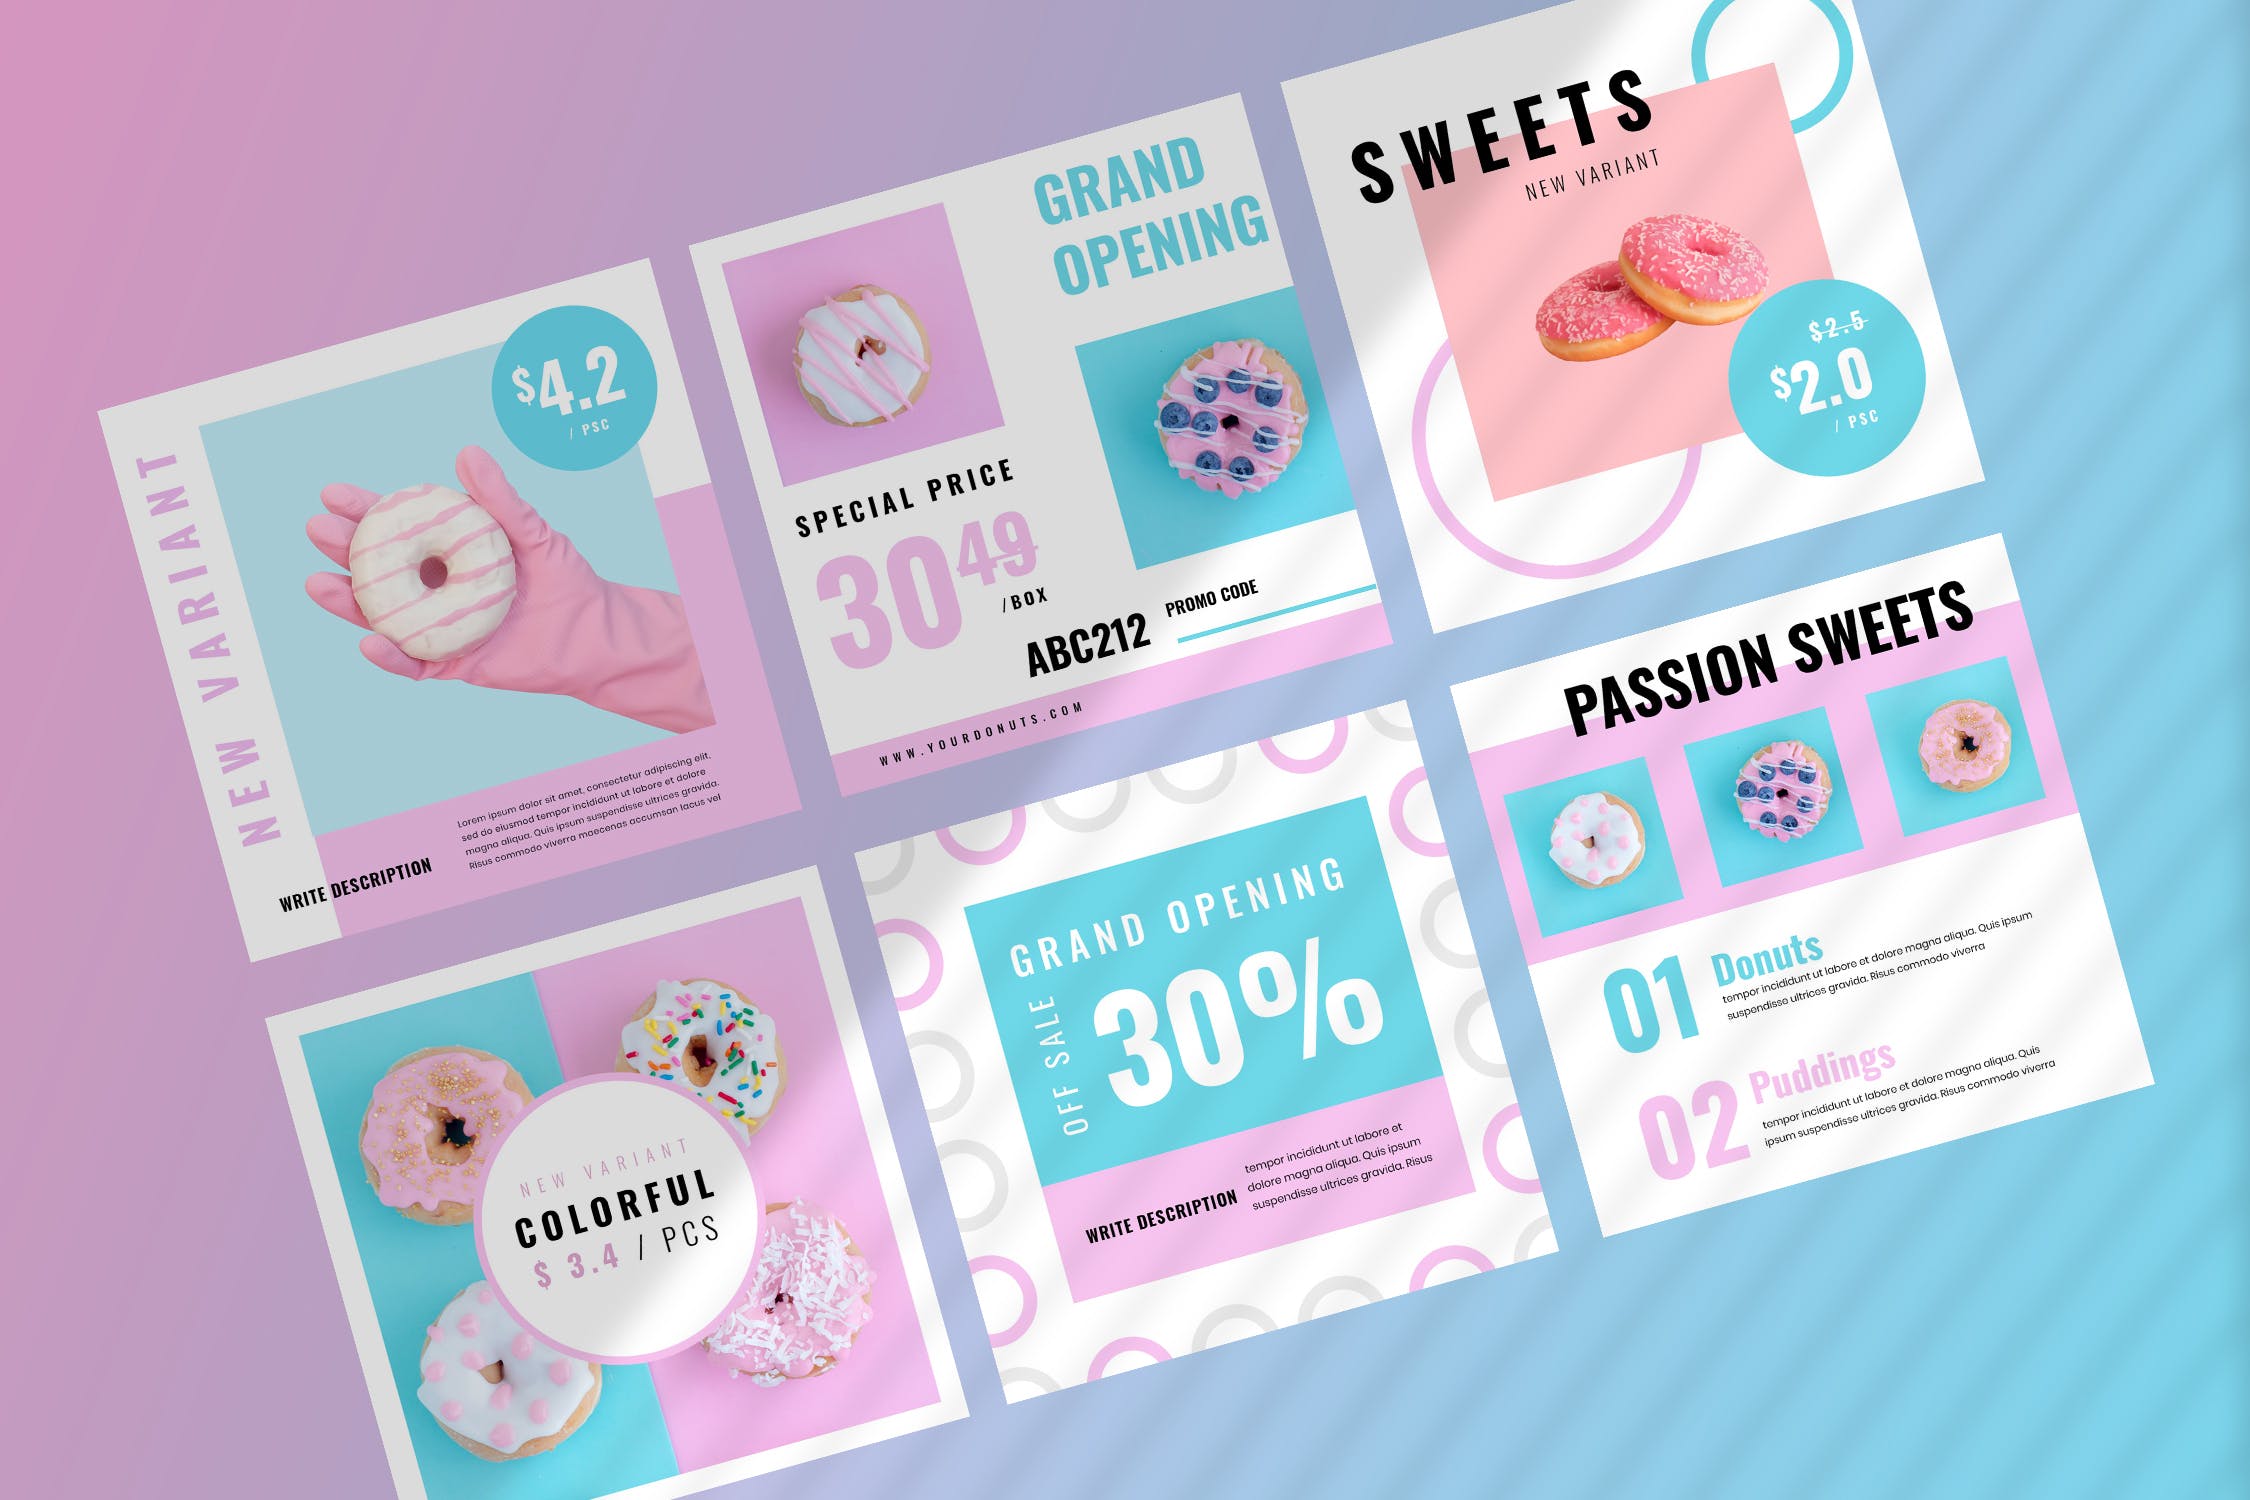 烘焙糕点面包品牌社交推广设计素材包 Fiveteen – Social Media Kit插图(2)